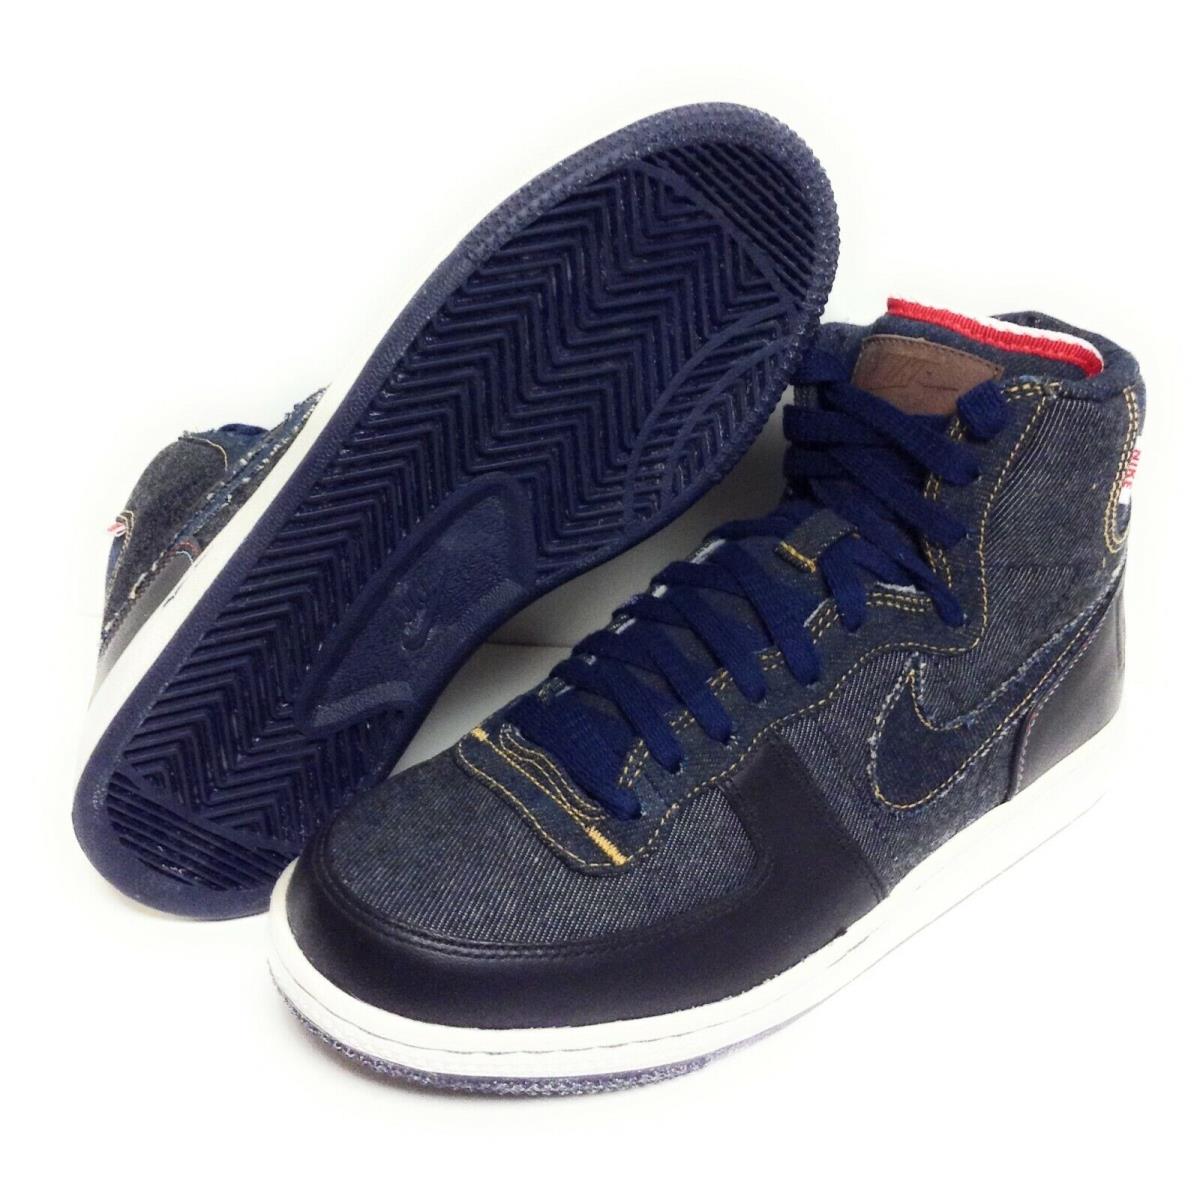 Womens Nike Terminator Hi Premium 307893 441 Denim 2009 Deadstock Sneakers Shoes - Blue